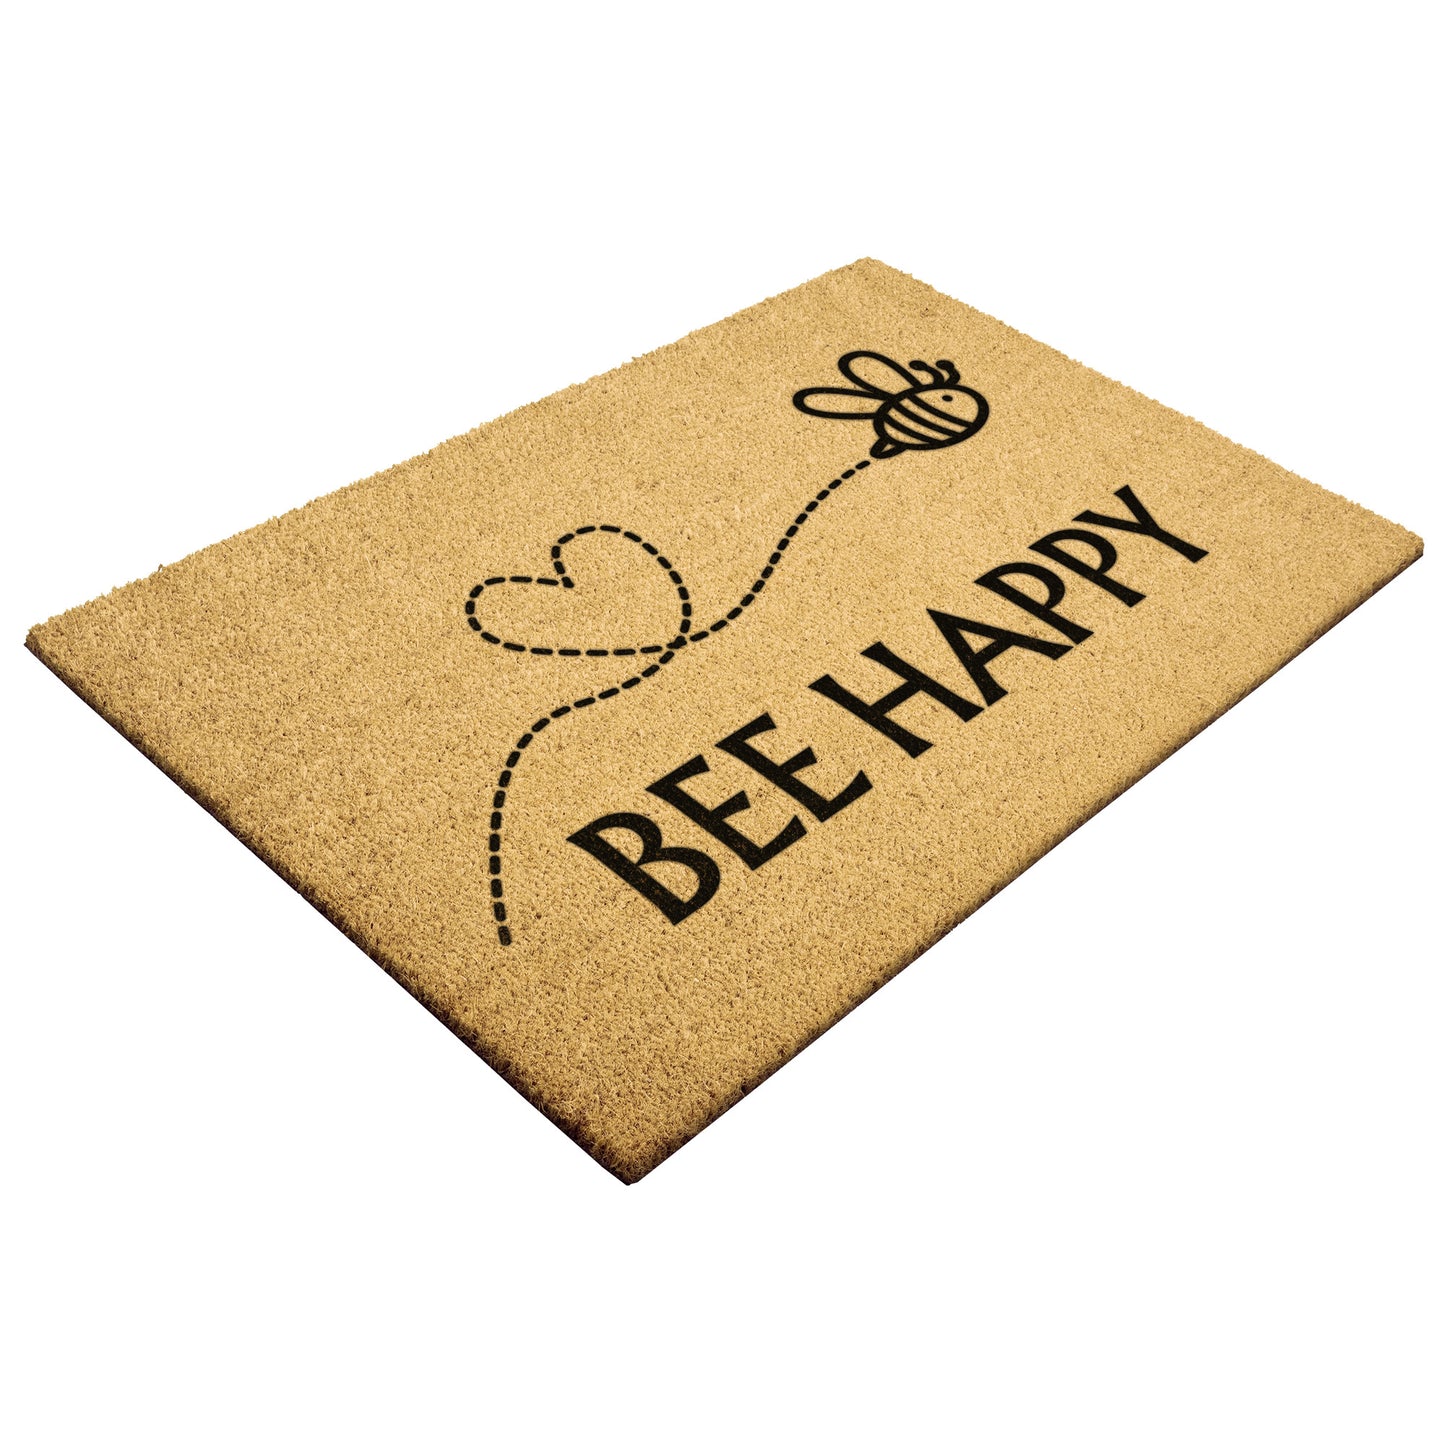 Bee Happy Outdoor Golden Coir Doormat